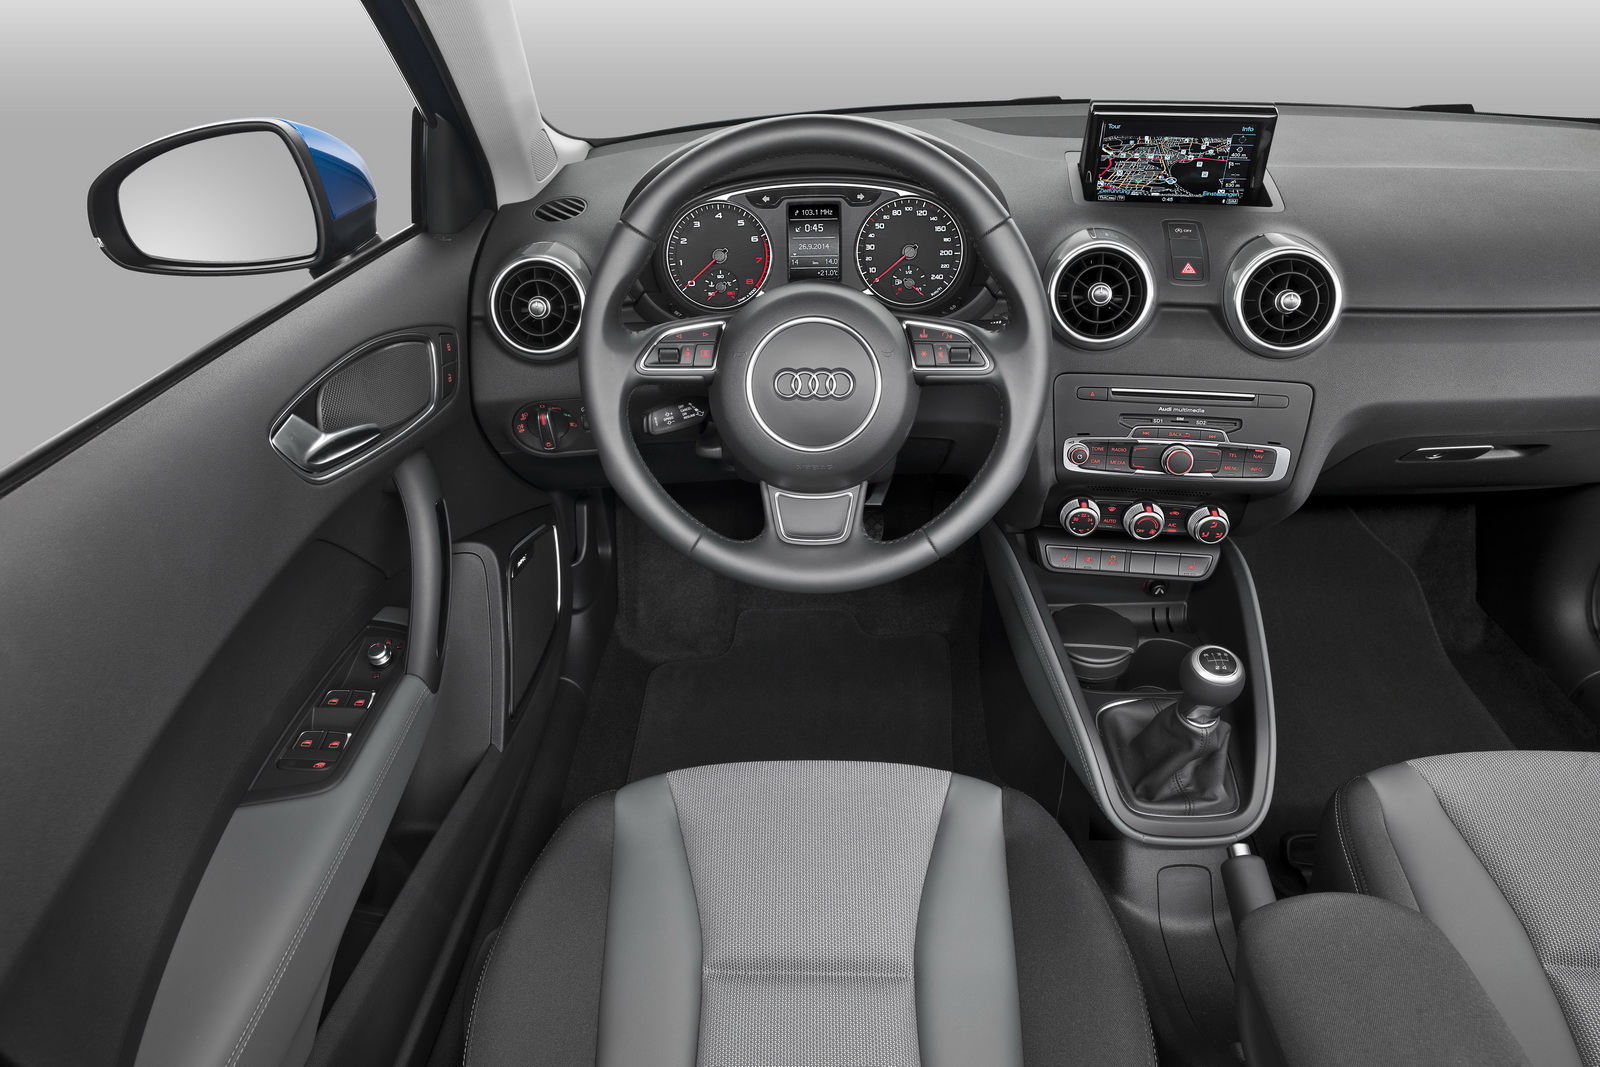 Audi ra mắt A1 2015, bổ sung 2 phiên bản động cơ I3, giá từ 22.410 USD